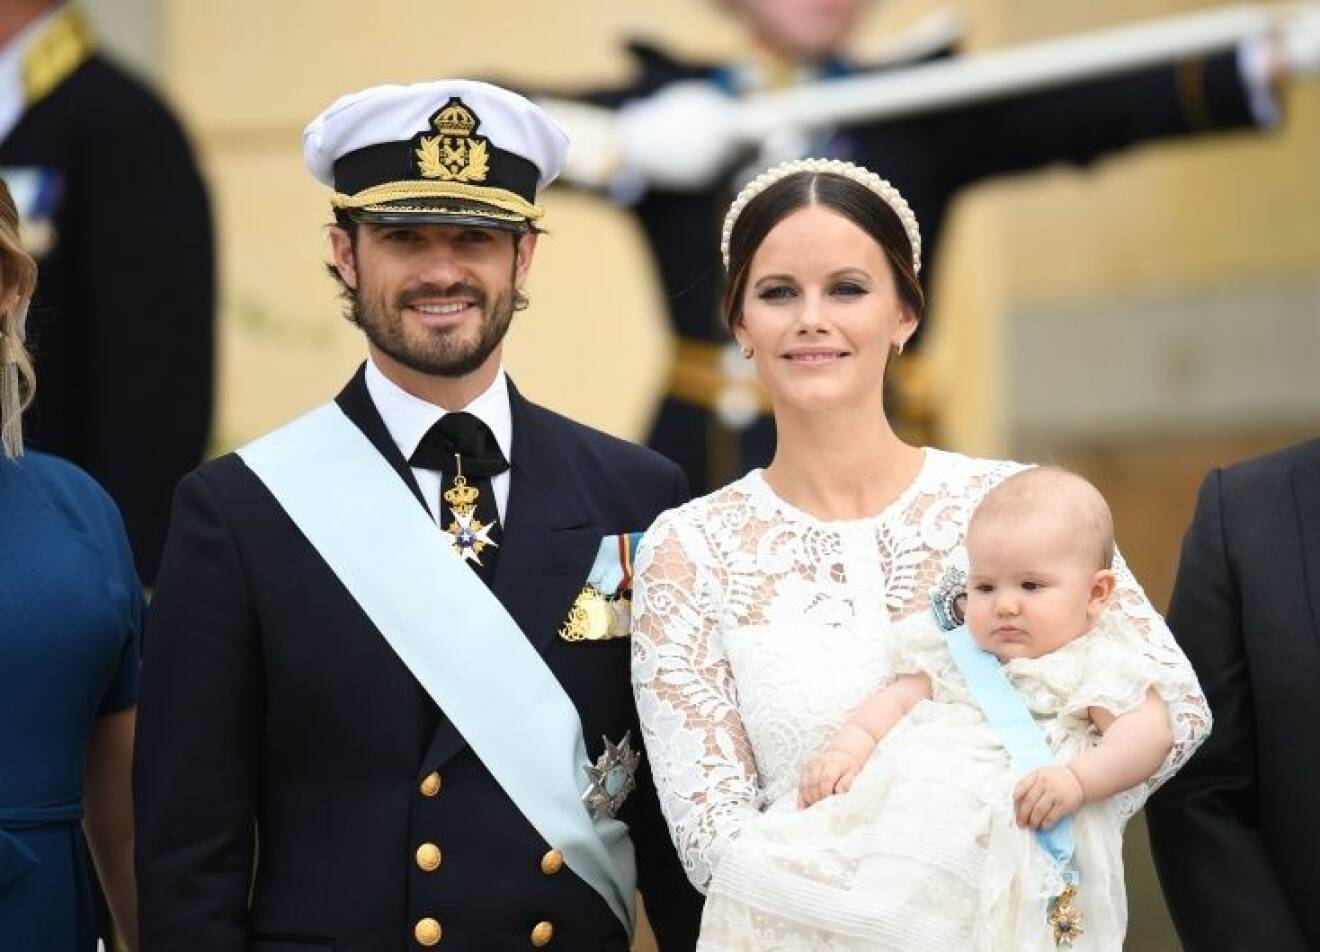 Prince Alexander of Sweden Christening, Drottningholm Palace, Stockholm, Sweden - 09 Sep 2016